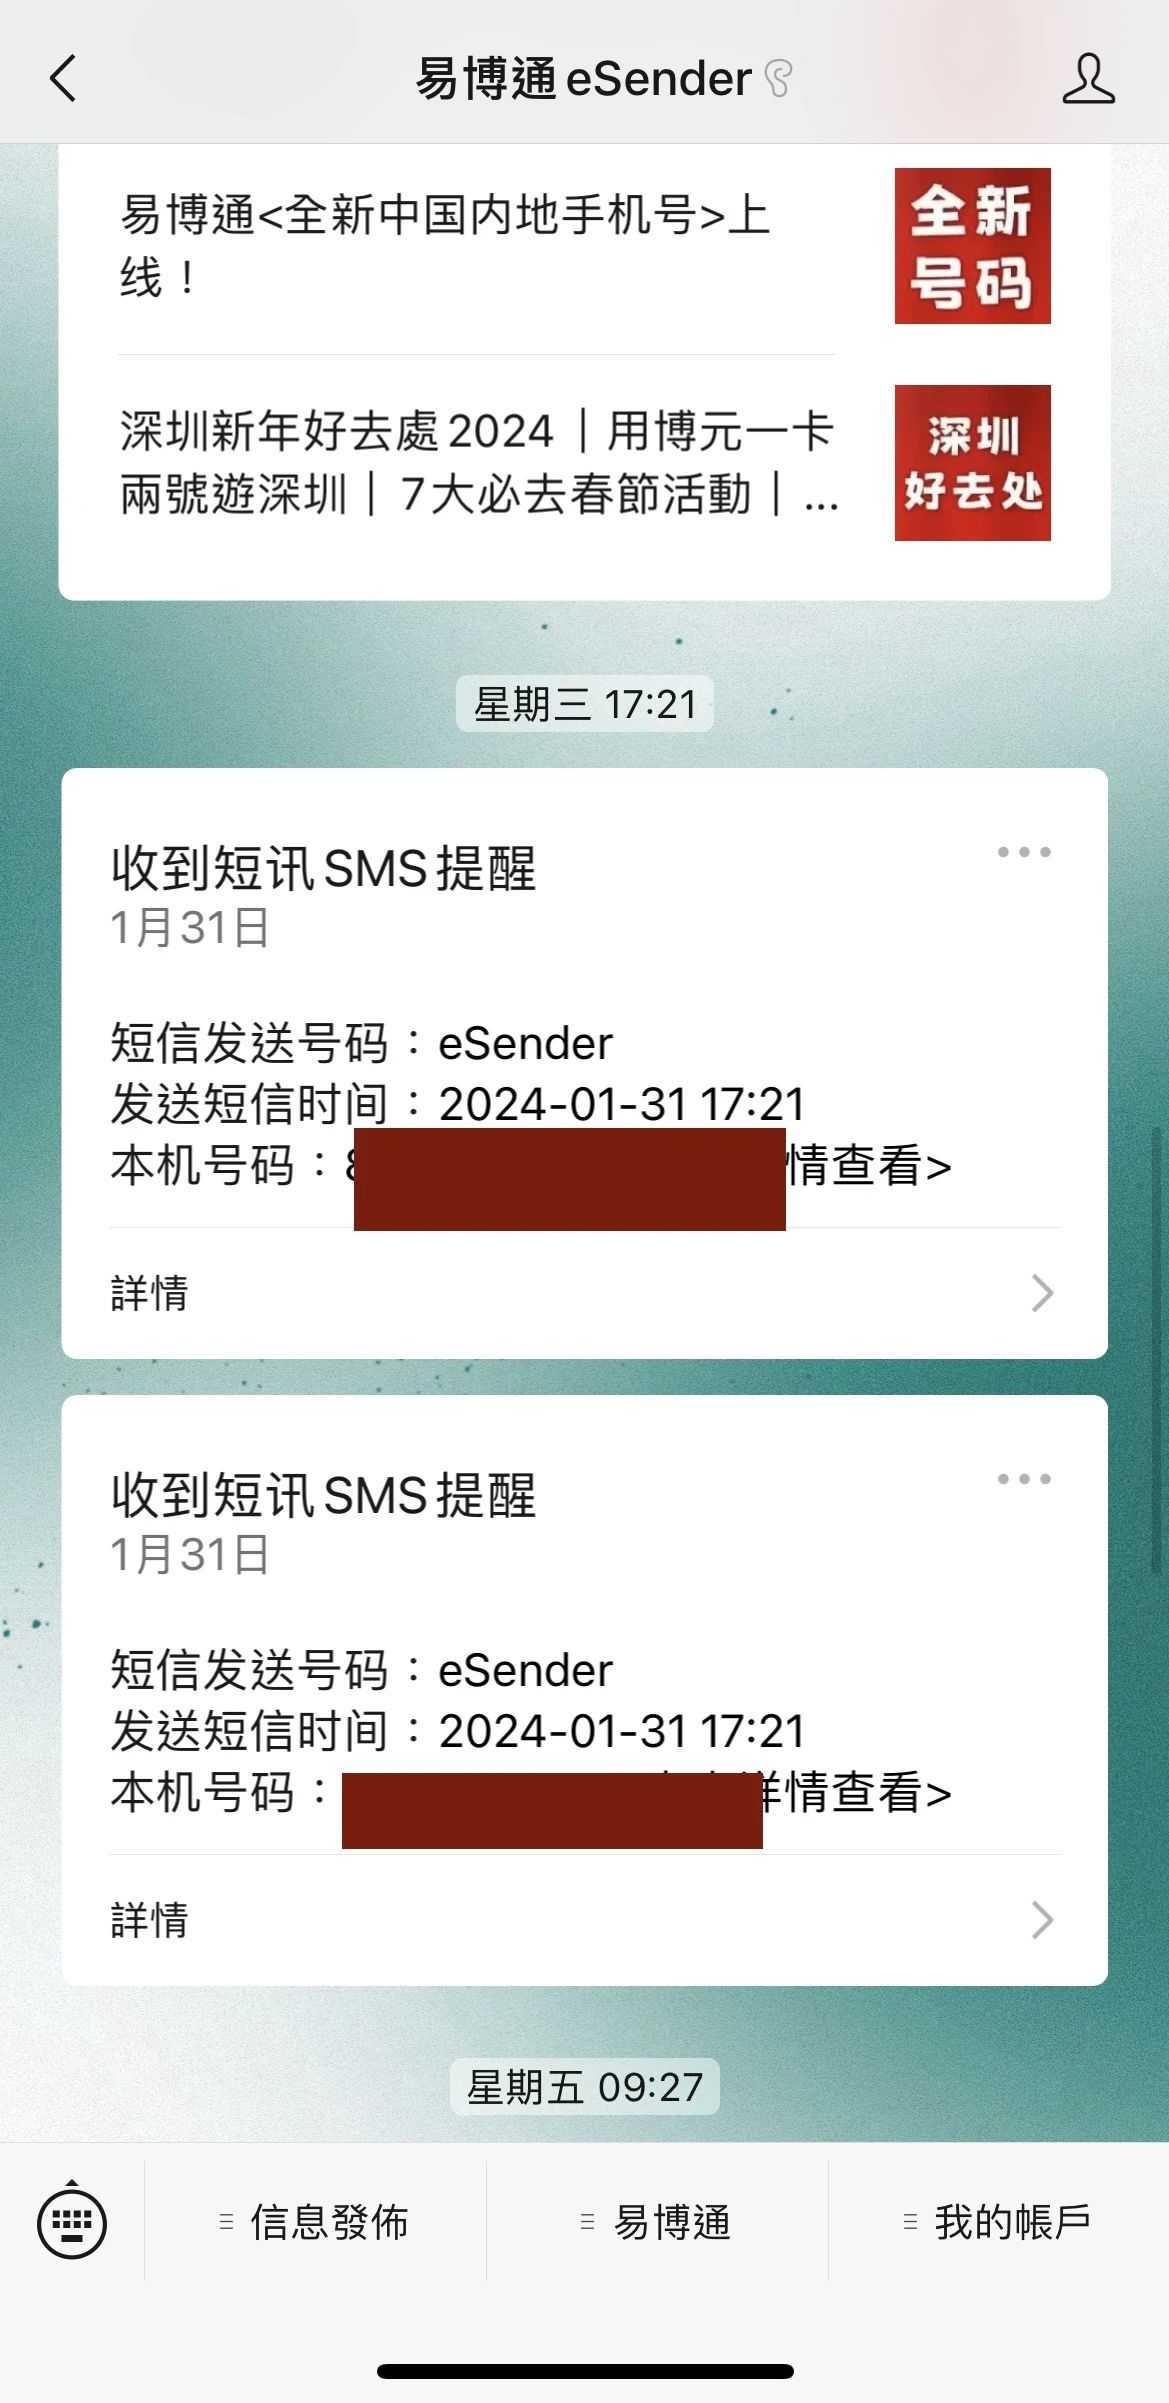 Passaggio 8: completa il pagamento e ricevi un SMS che indica che il numero di cellulare di Hong Kong è stato ordinato con successo. L'undicesima foto